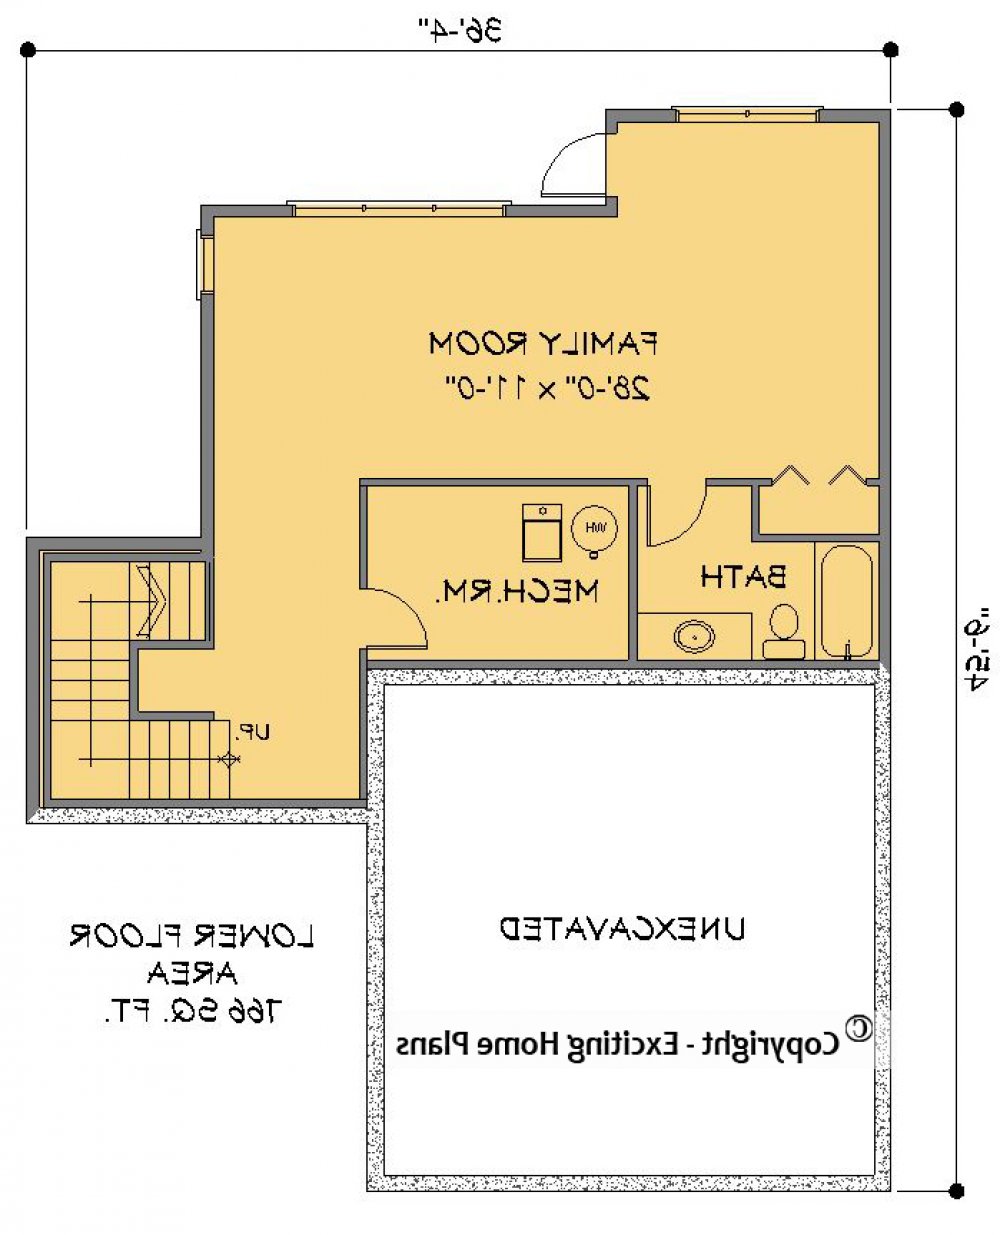 House Plan E1499-10 Lower Floor Plan REVERSE